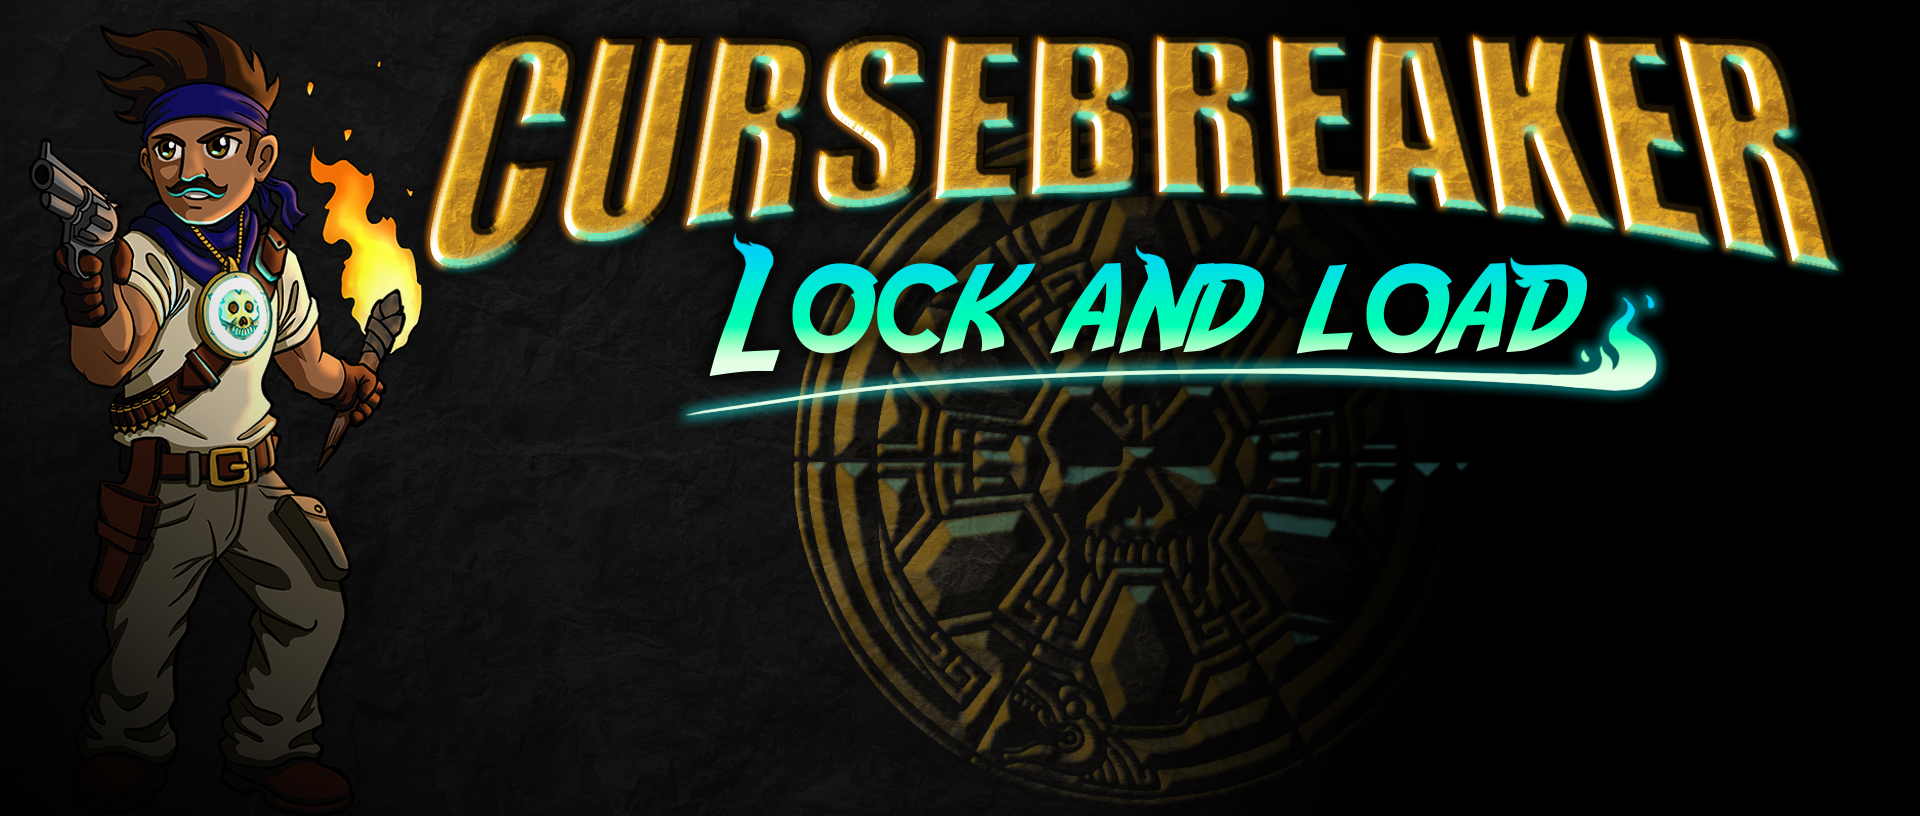 Cursebreaker: Lock and Load